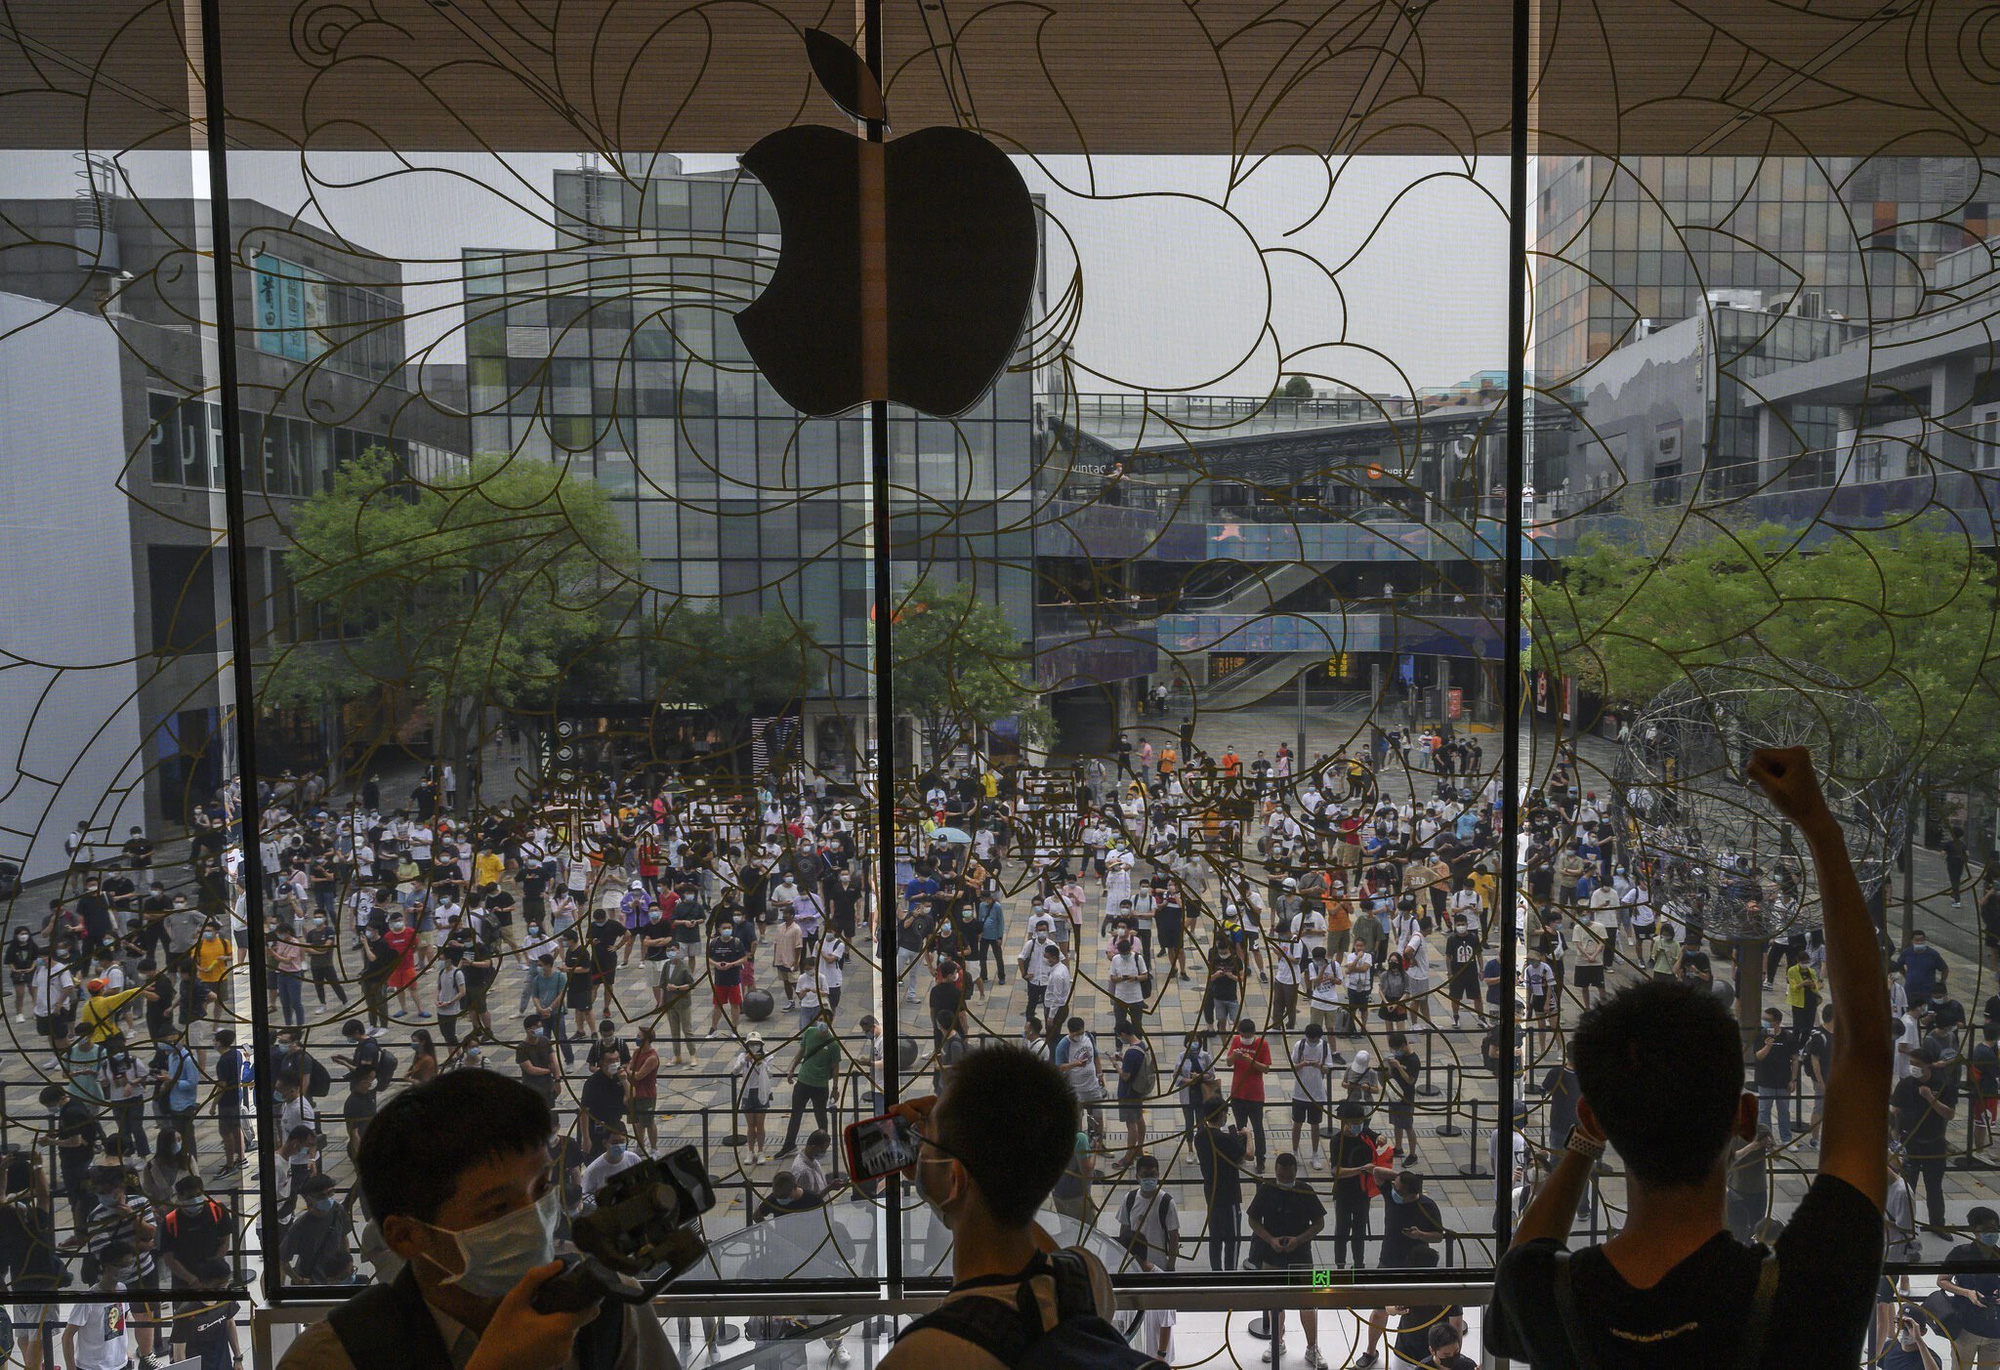 Trung Quốc là thị trường quan trọng của Apple. Khoảng 20% doanh thu của Táo khuyết đến từ nước này. Ảnh: @Getty.